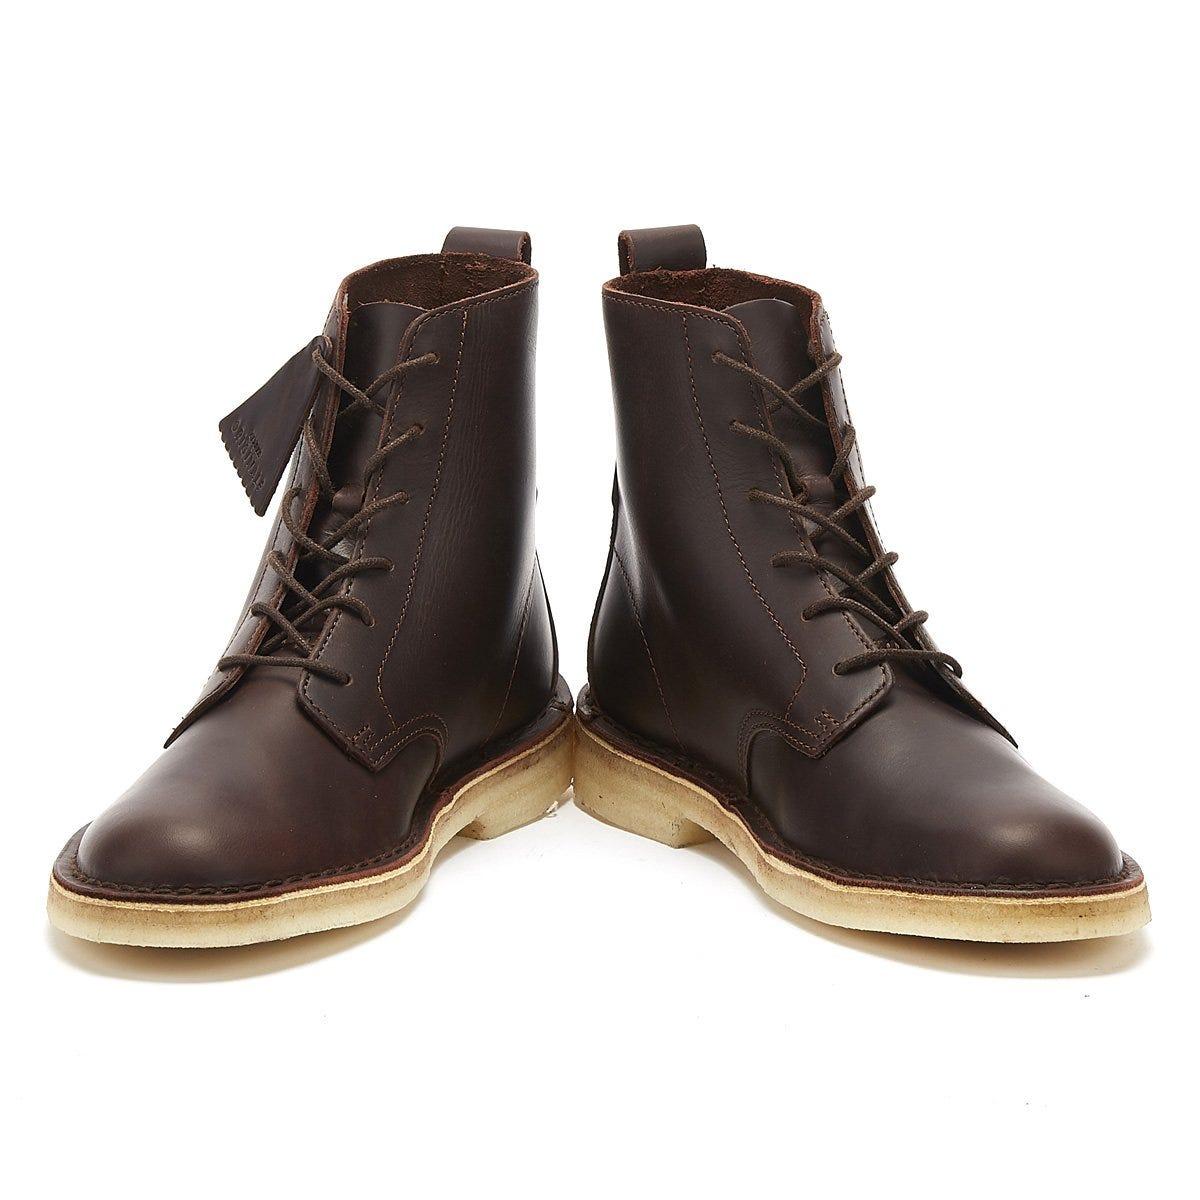 Clarks Originals Desert Mali Men's Leaf Leather Boots 26115385 